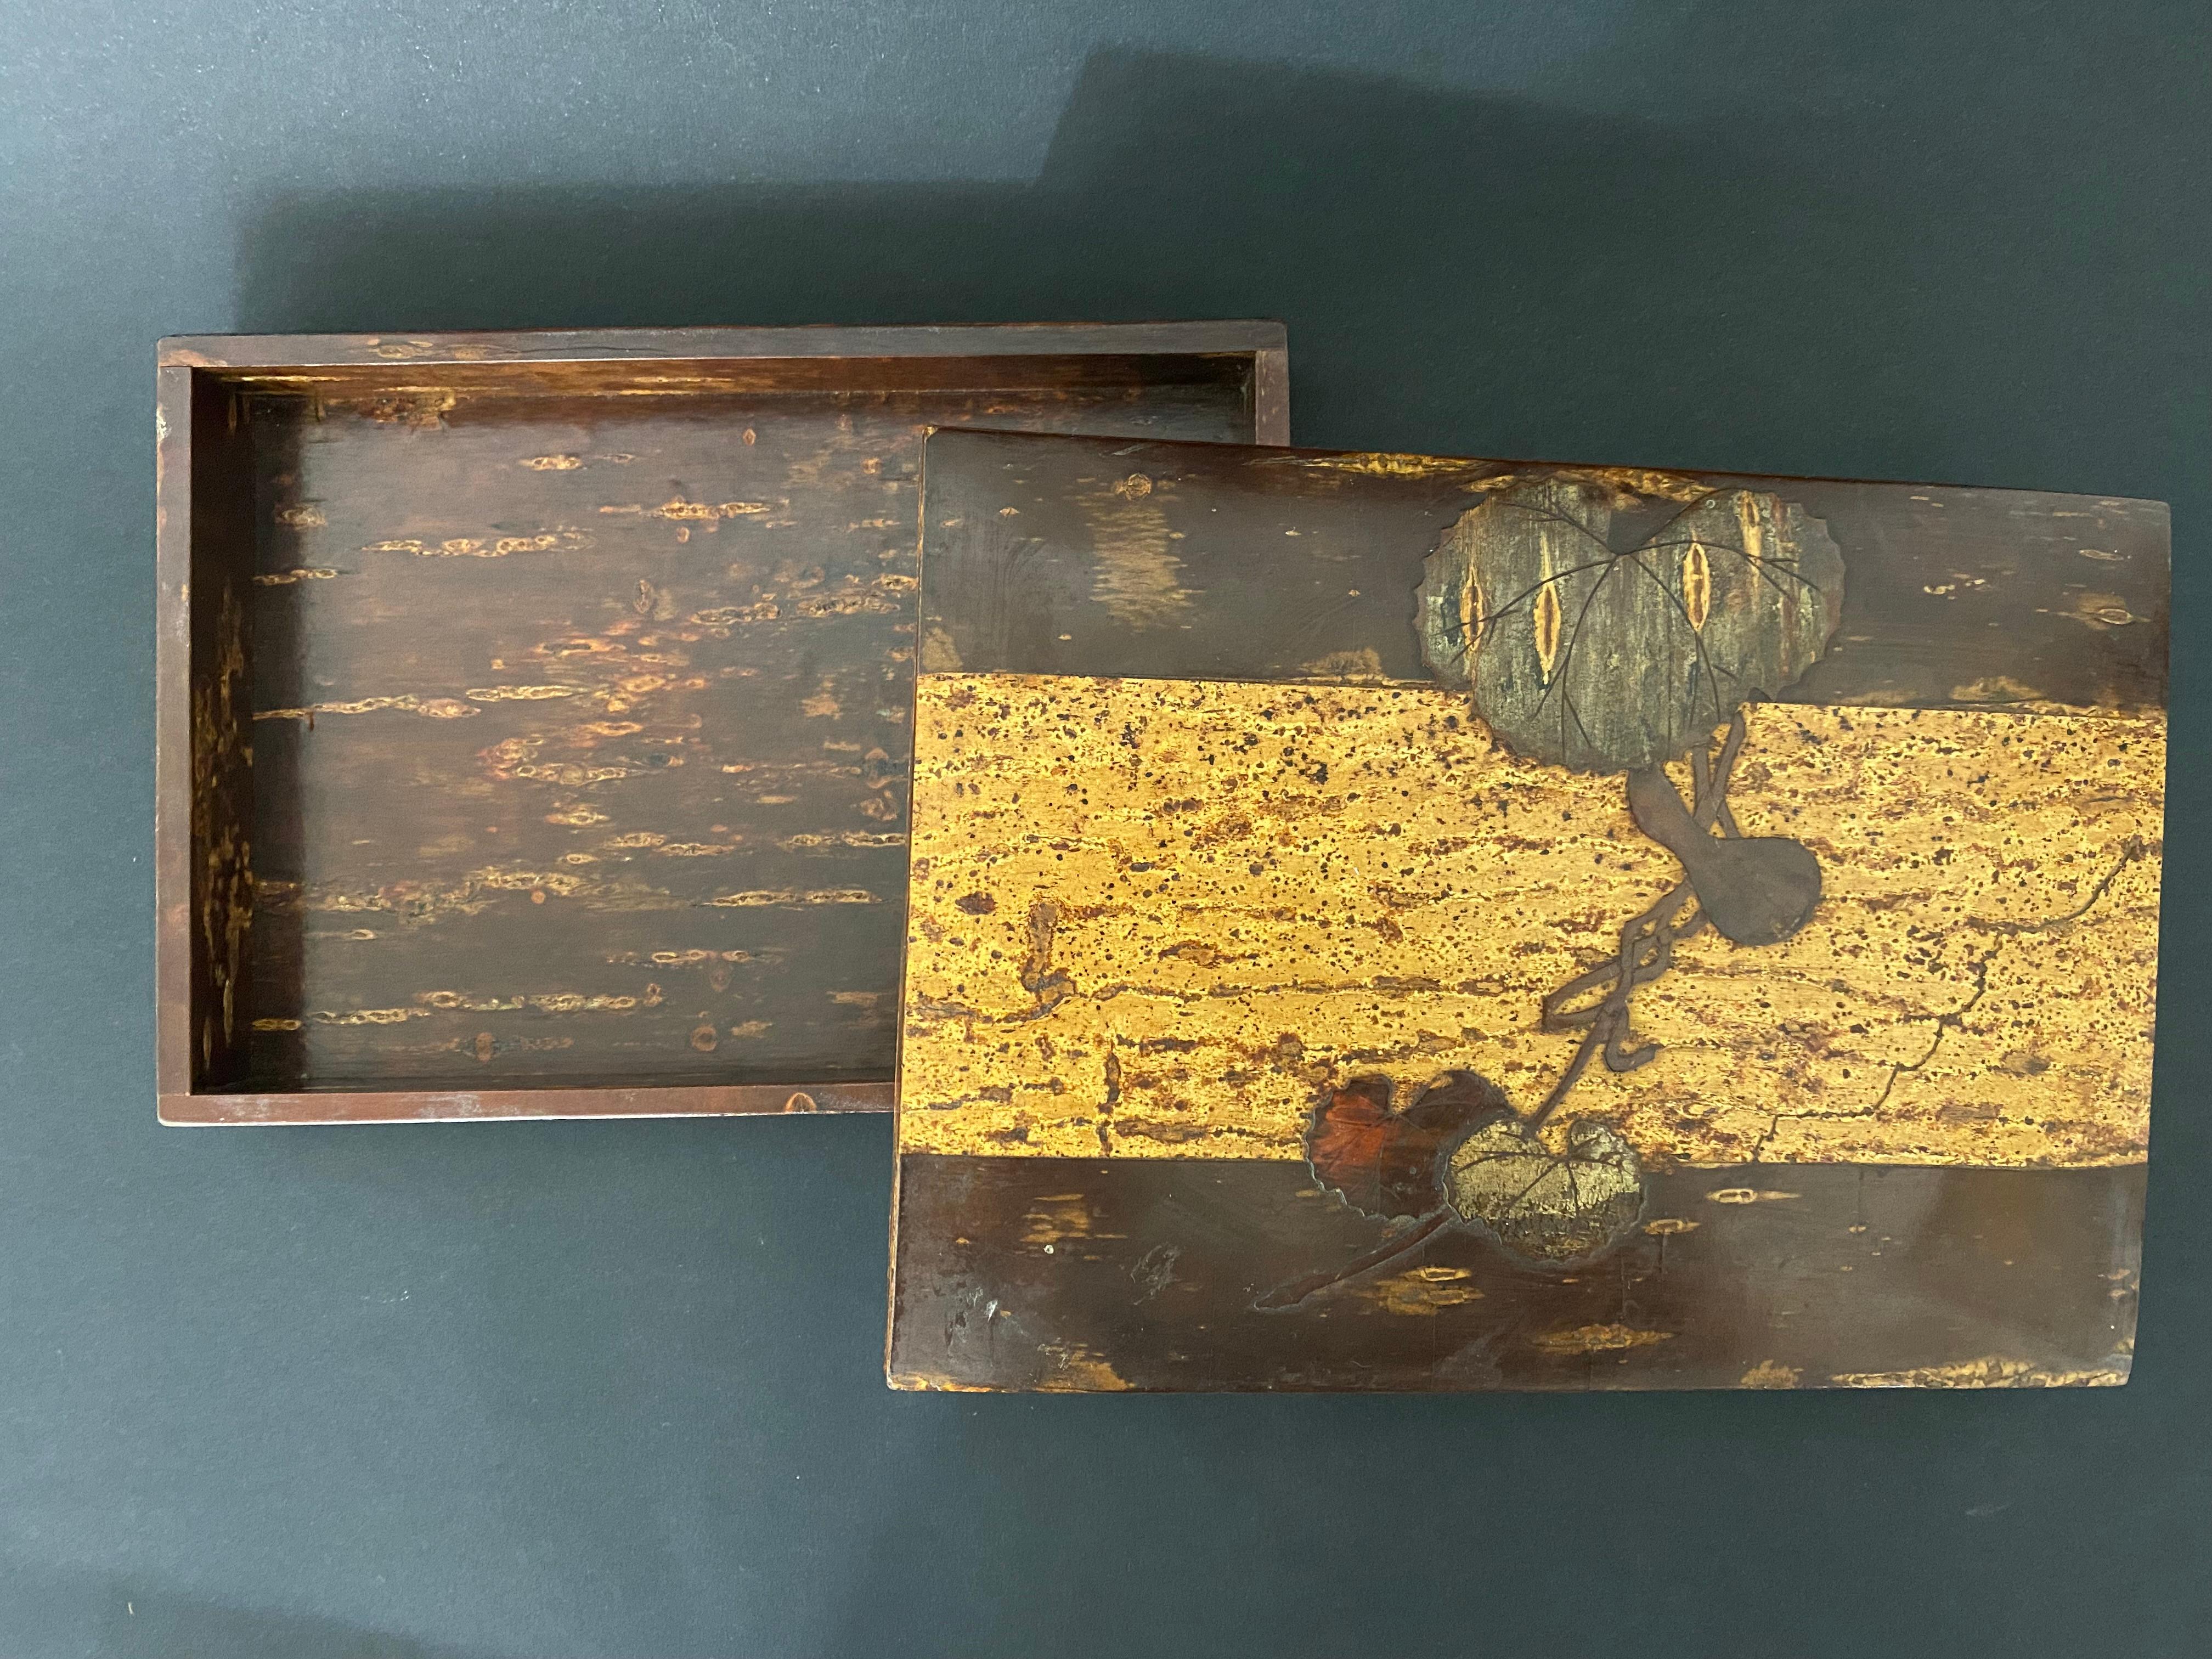 Charmante japanische Schachtel aus dem frühen 20. Jahrhundert. Das Holz ist alt und mit schönen Intarsien auf dem Deckel versehen. Der Deckel ist mit verschiedenen Holzstücken eingelegt, die einen Zweig aus Koloquinten bilden. Durch die Verwendung